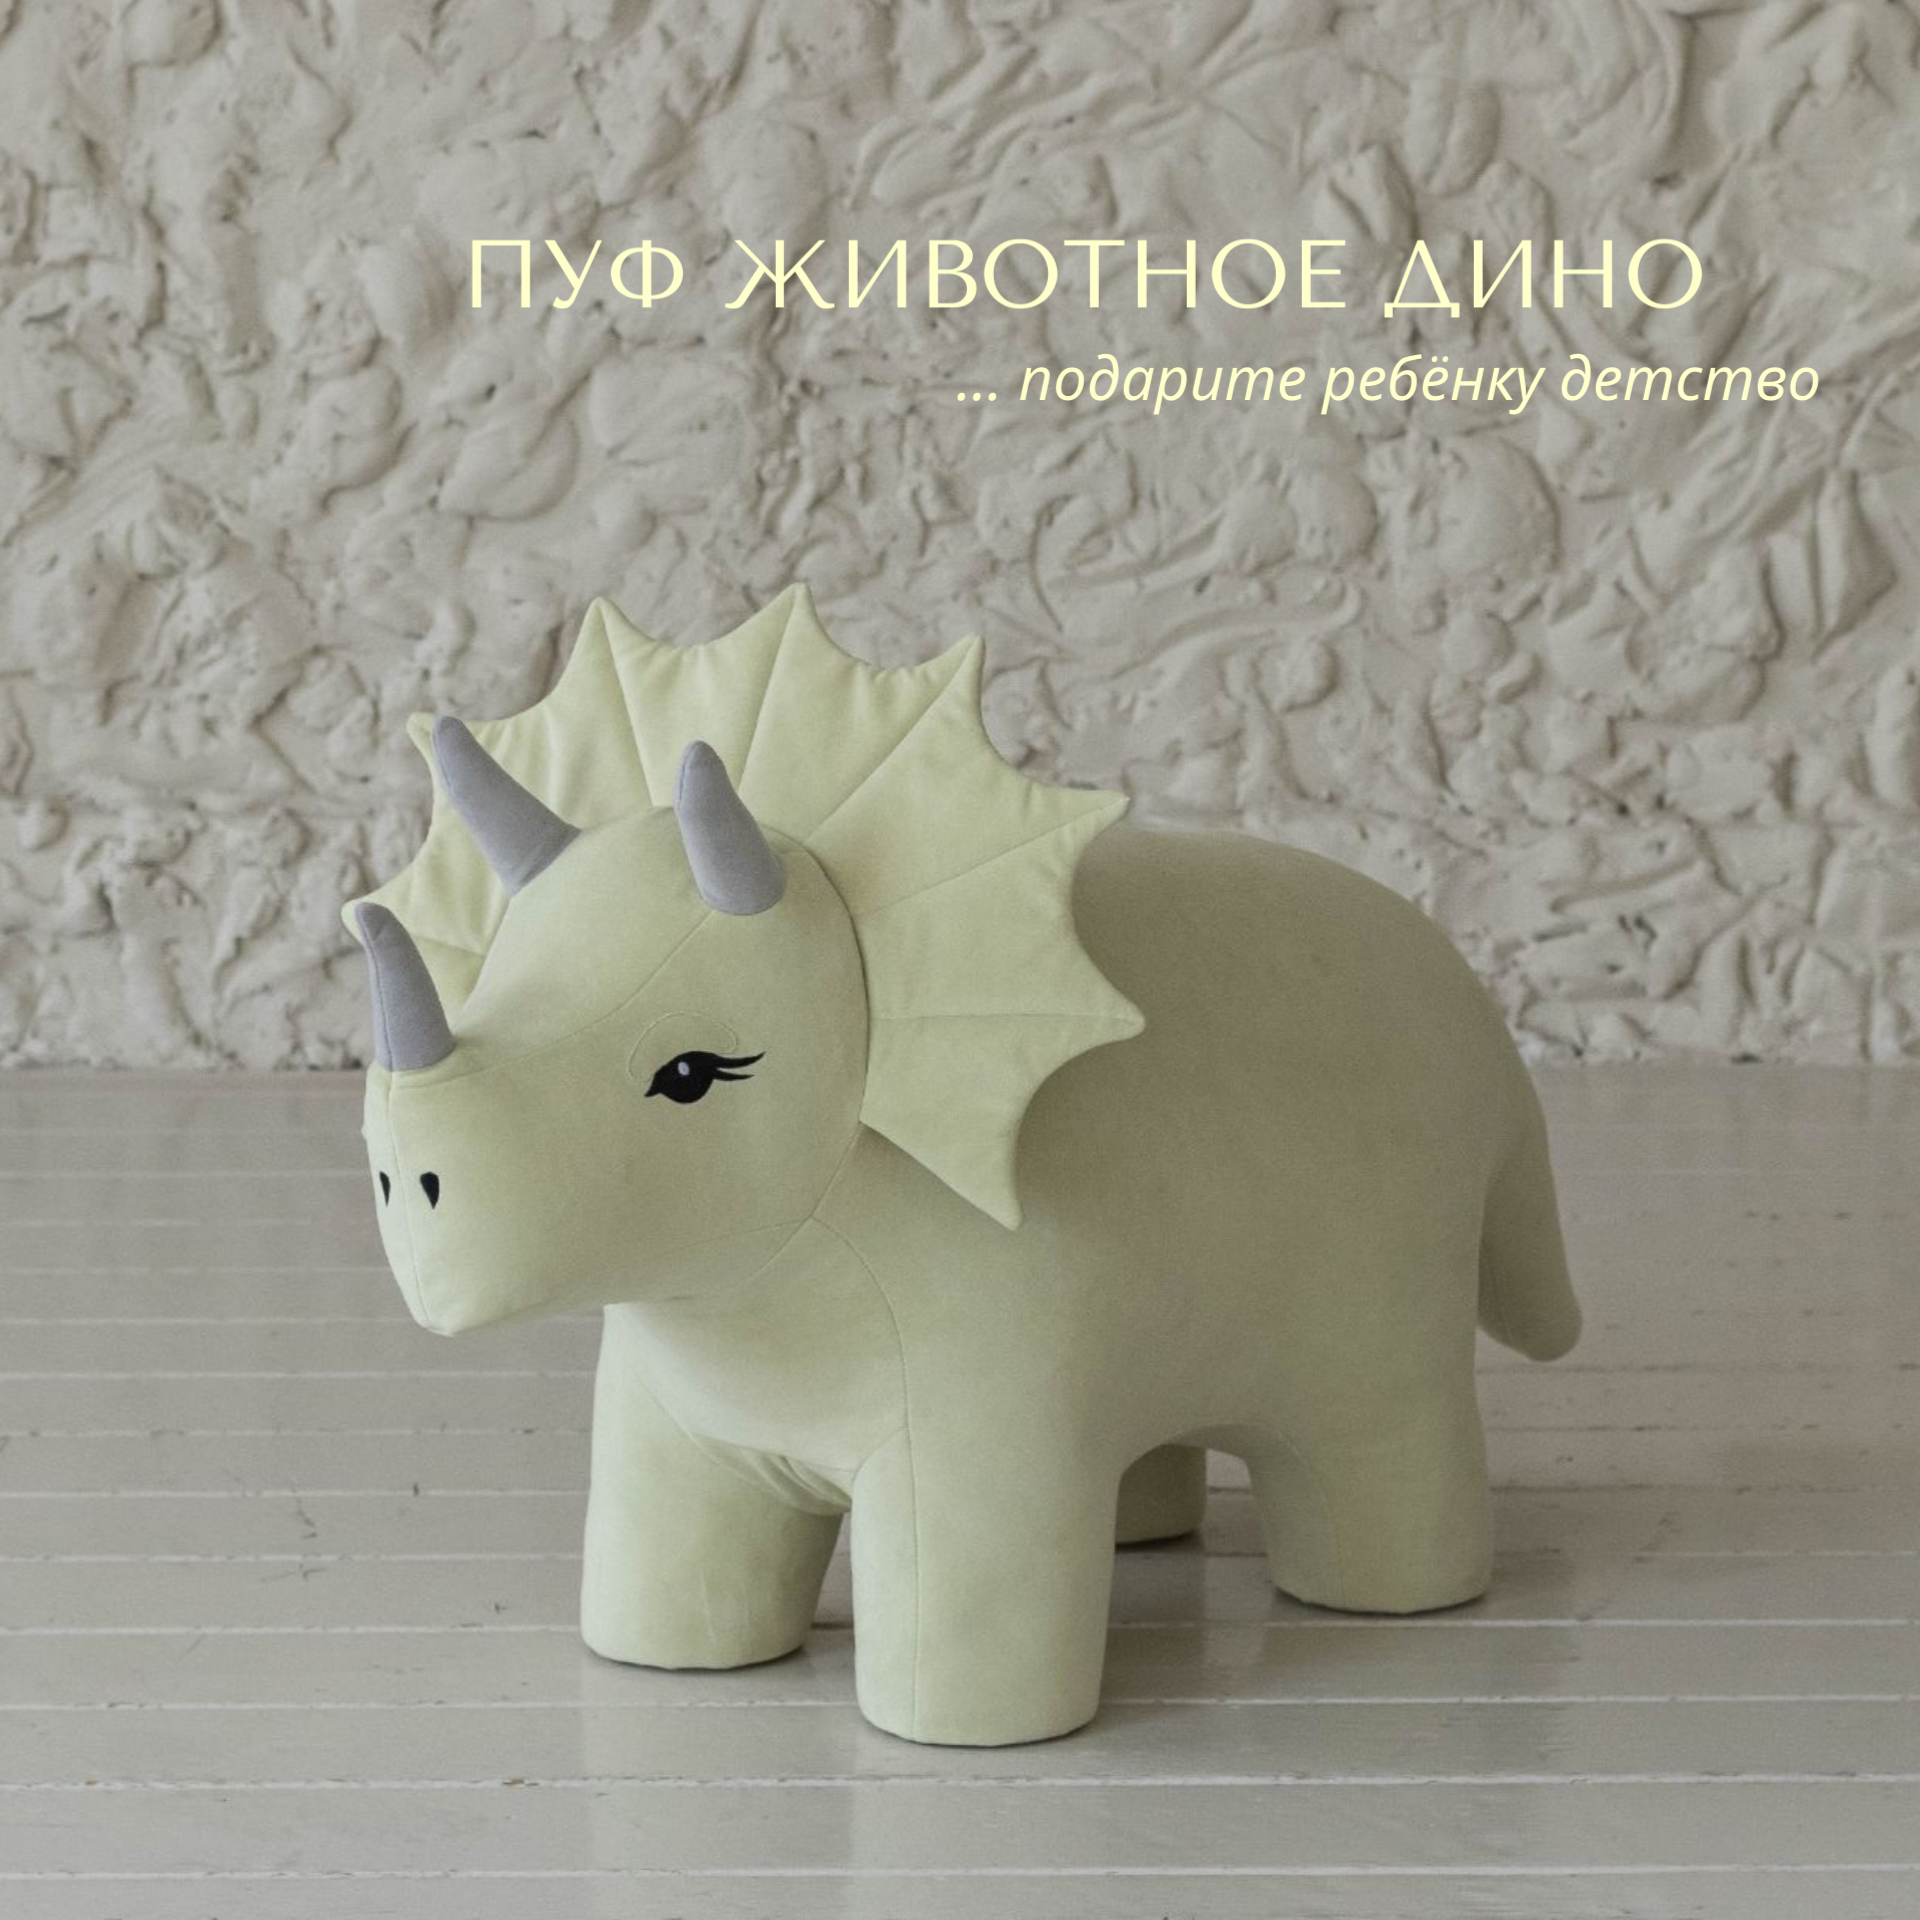 Мягкая игрушка для детей DPkids пуфик детский животное динозавр трицератопс зеленый